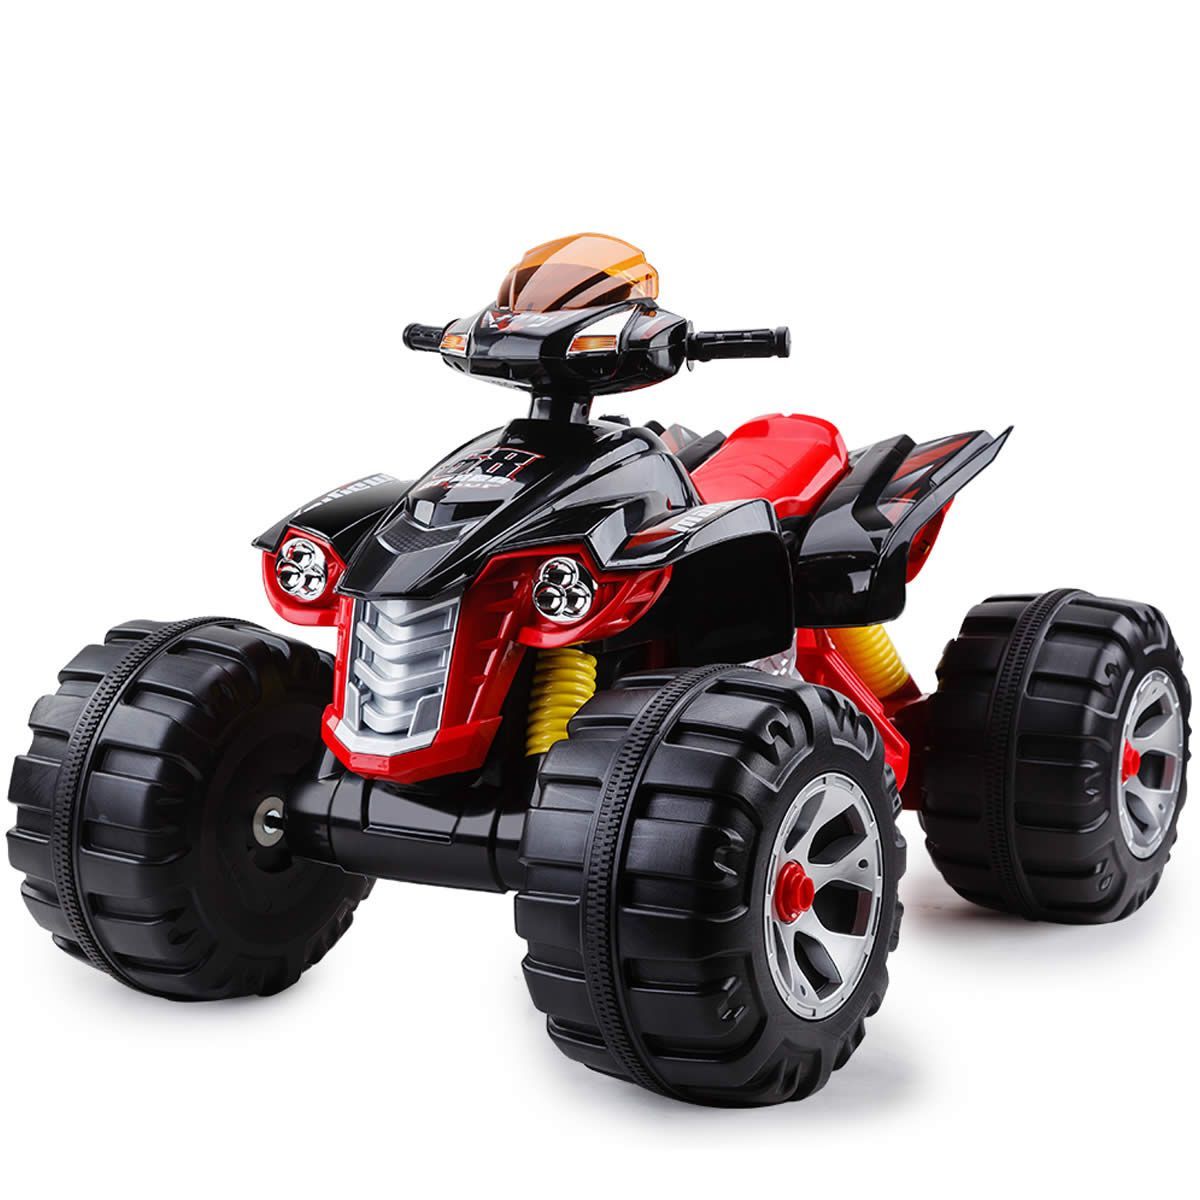 ROVO KIDS Buggy Go Cart Ride On Cars Children Toys 4 Wheeler Battery 12V